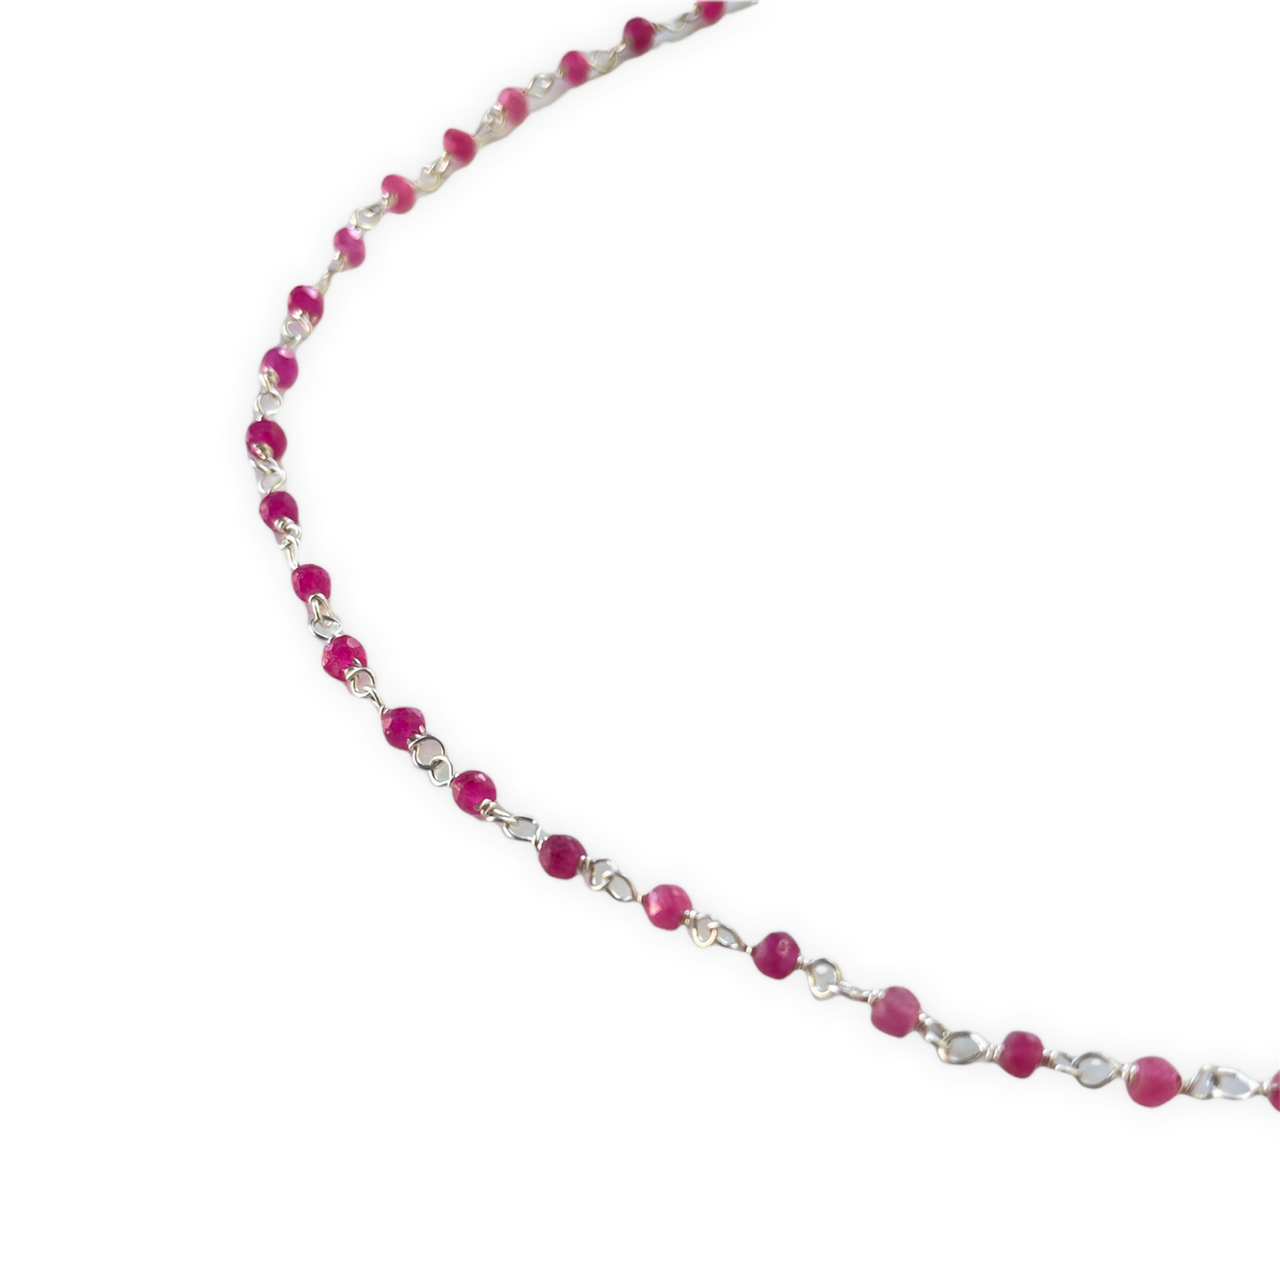 Espectacular collar corto de plata de ley y piedras naturales rosas. Este collar es una pieza ideal y llena de energía para que la combines con tu look preferido. Detalle